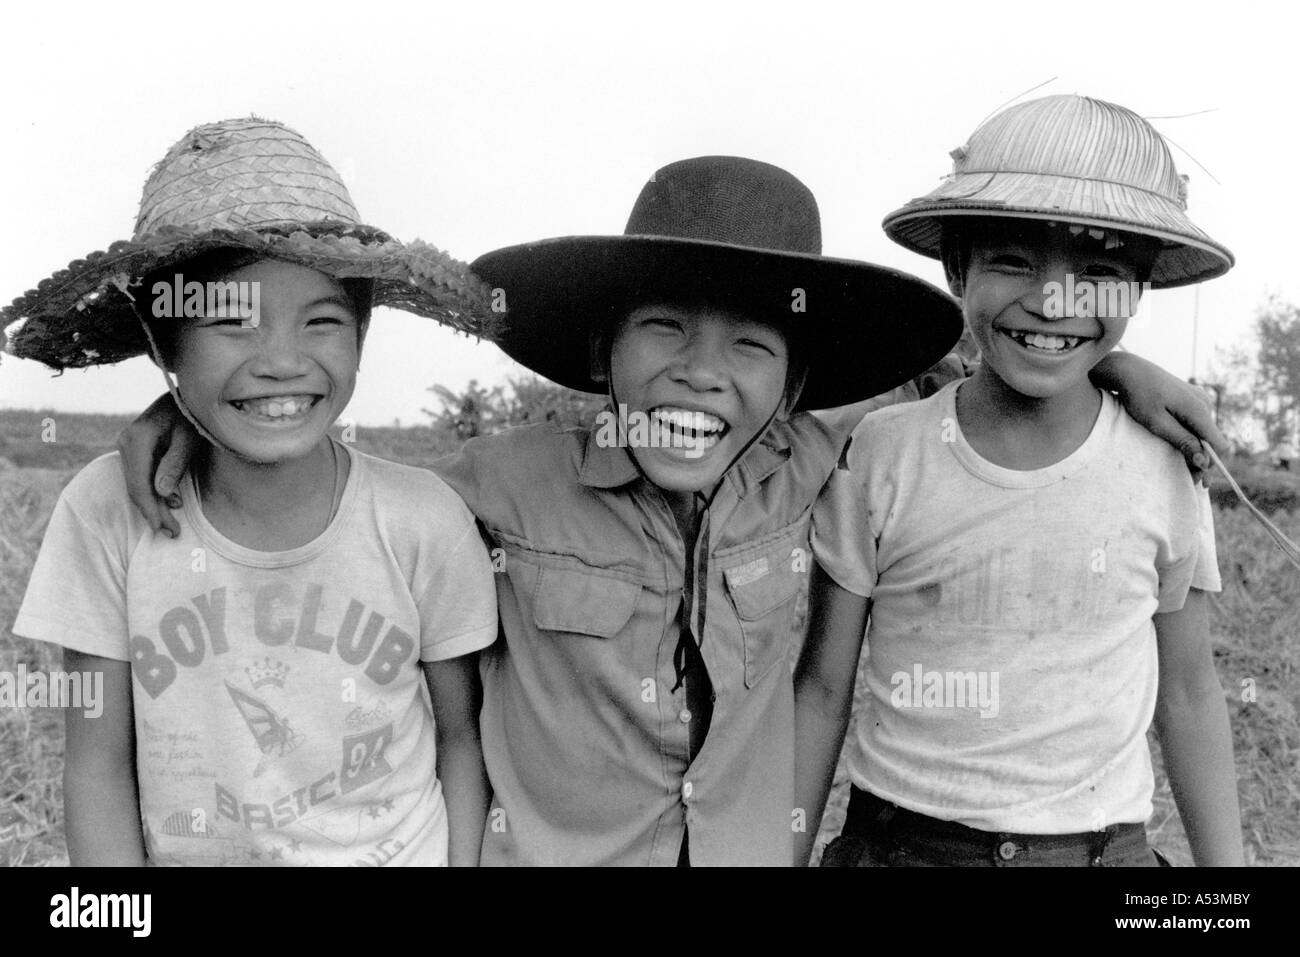 Painet ha1394 208 in bianco e nero di bambini ragazzi ha nam vietnam paese nazione in via di sviluppo meno sviluppati dal punto di vista economico la cultura Foto Stock